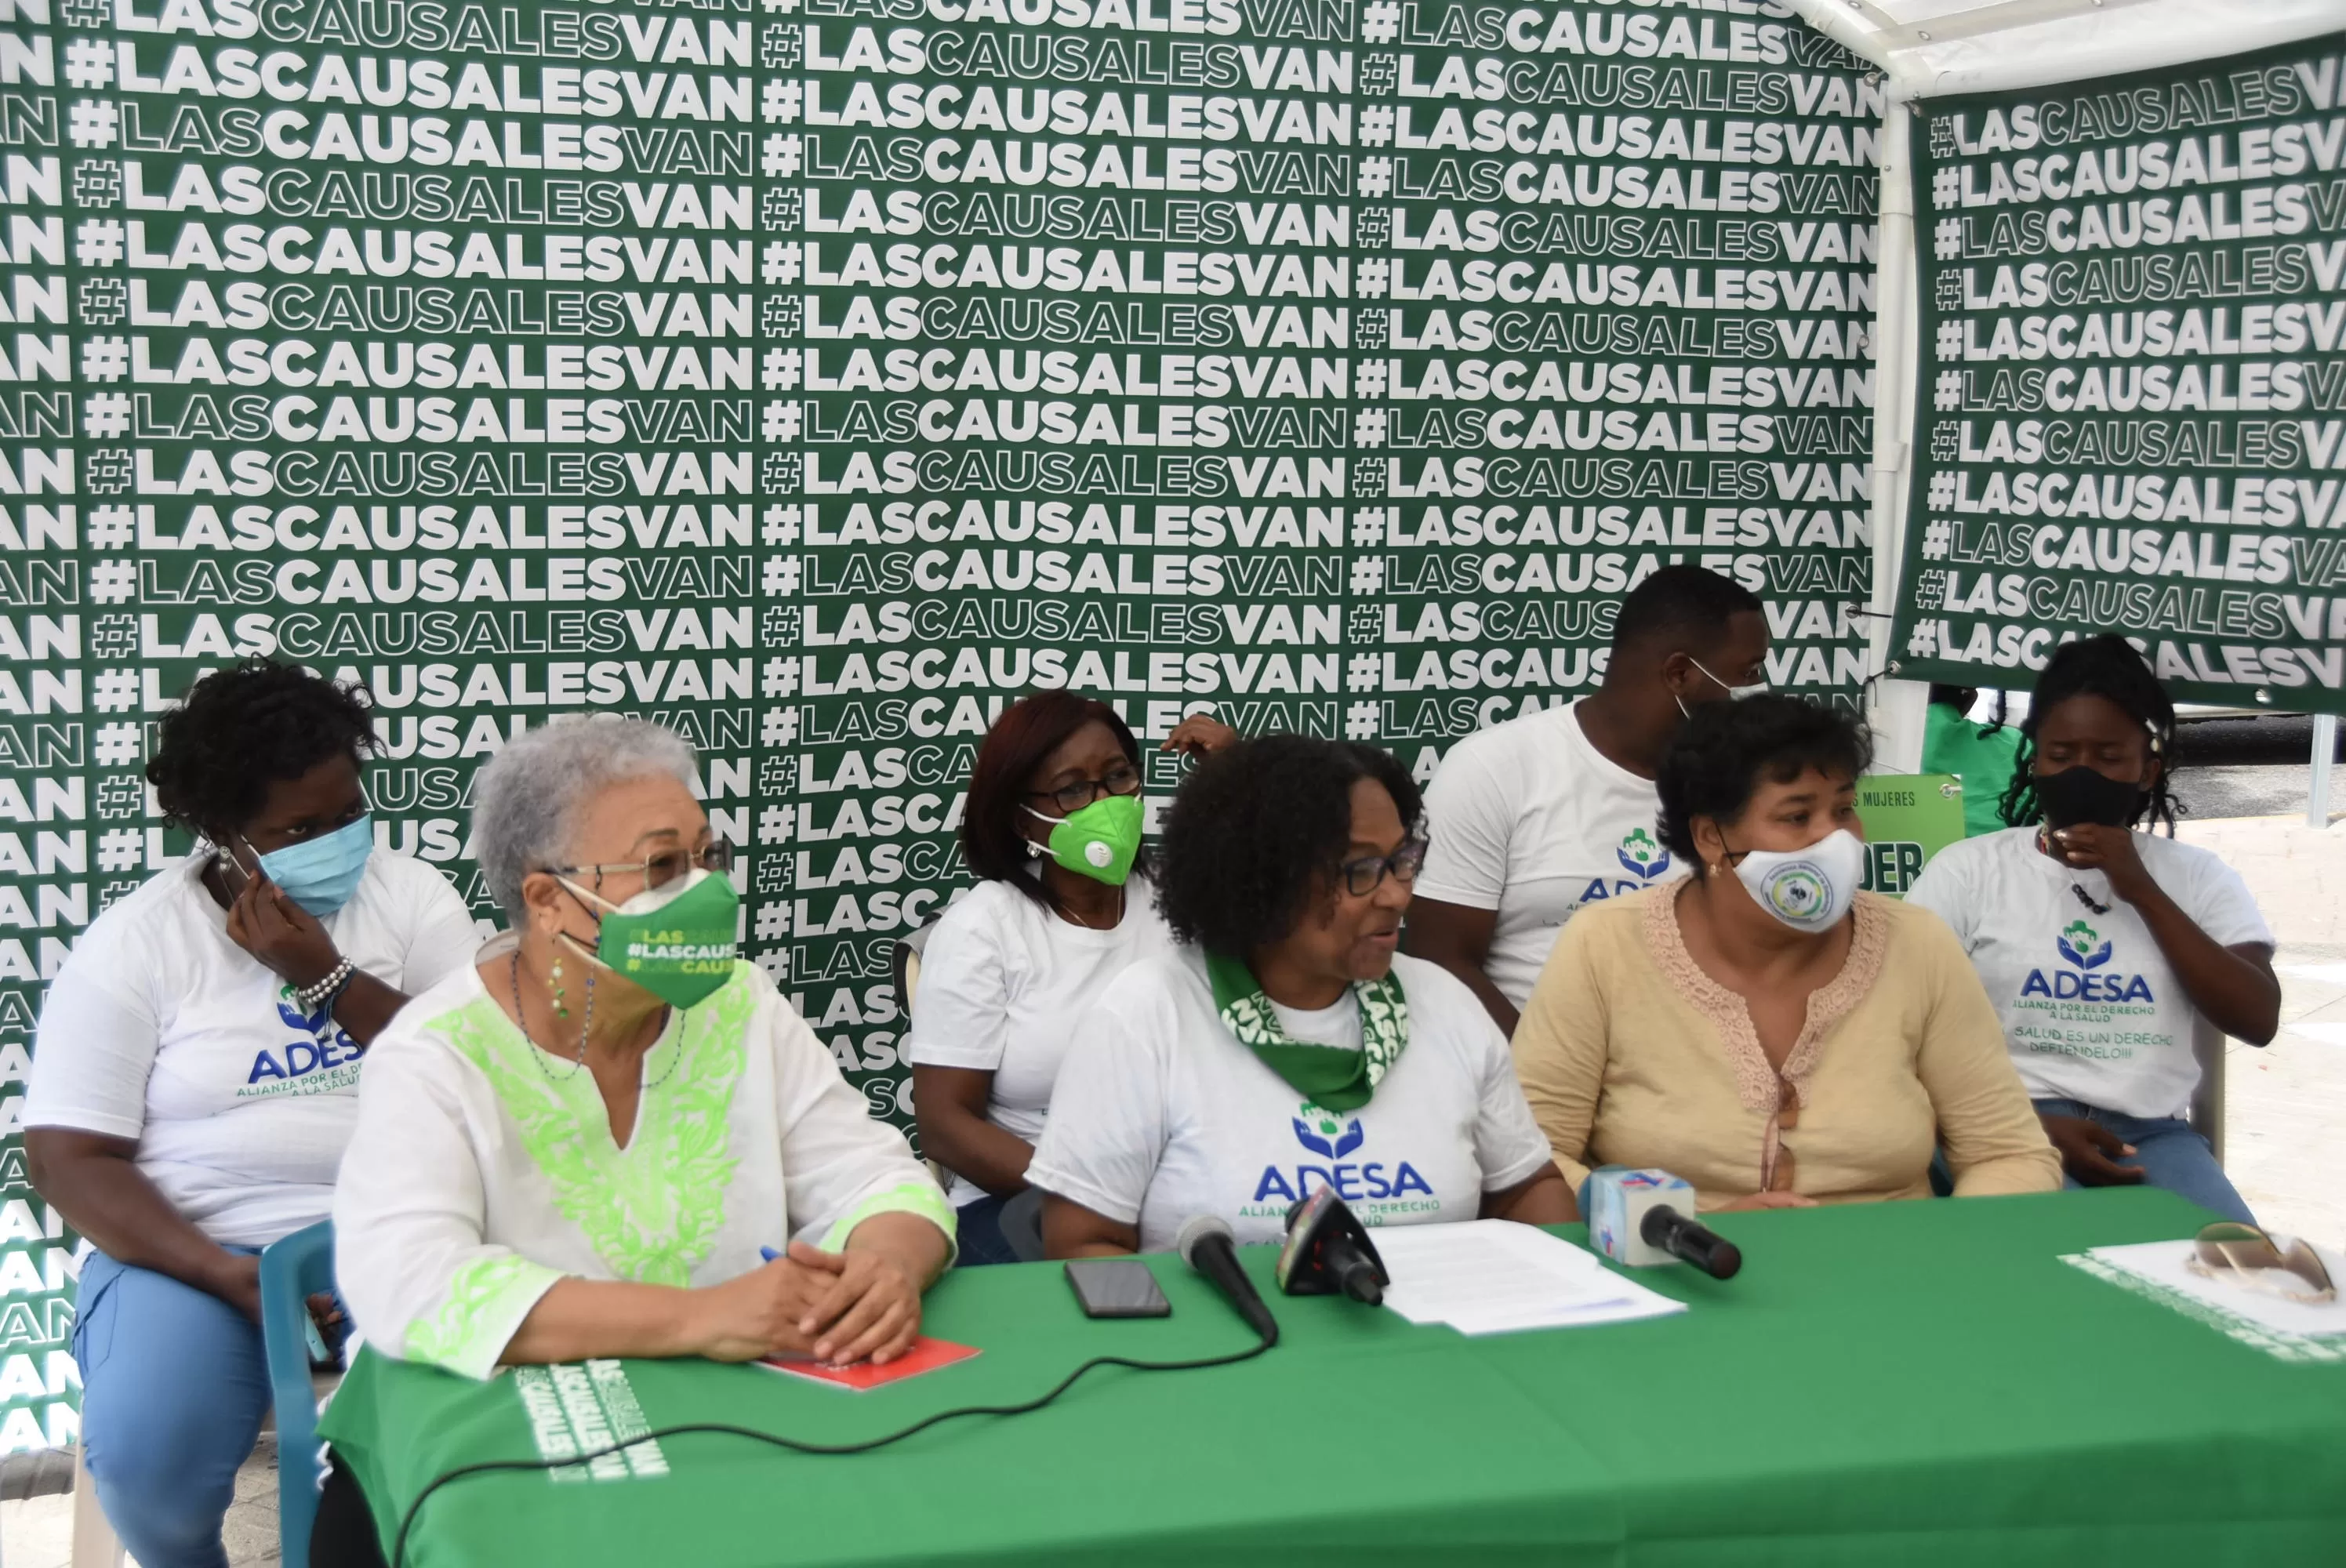 Organizaciones refuerzan apoyo a las tres causales en campamento frente al Palacio